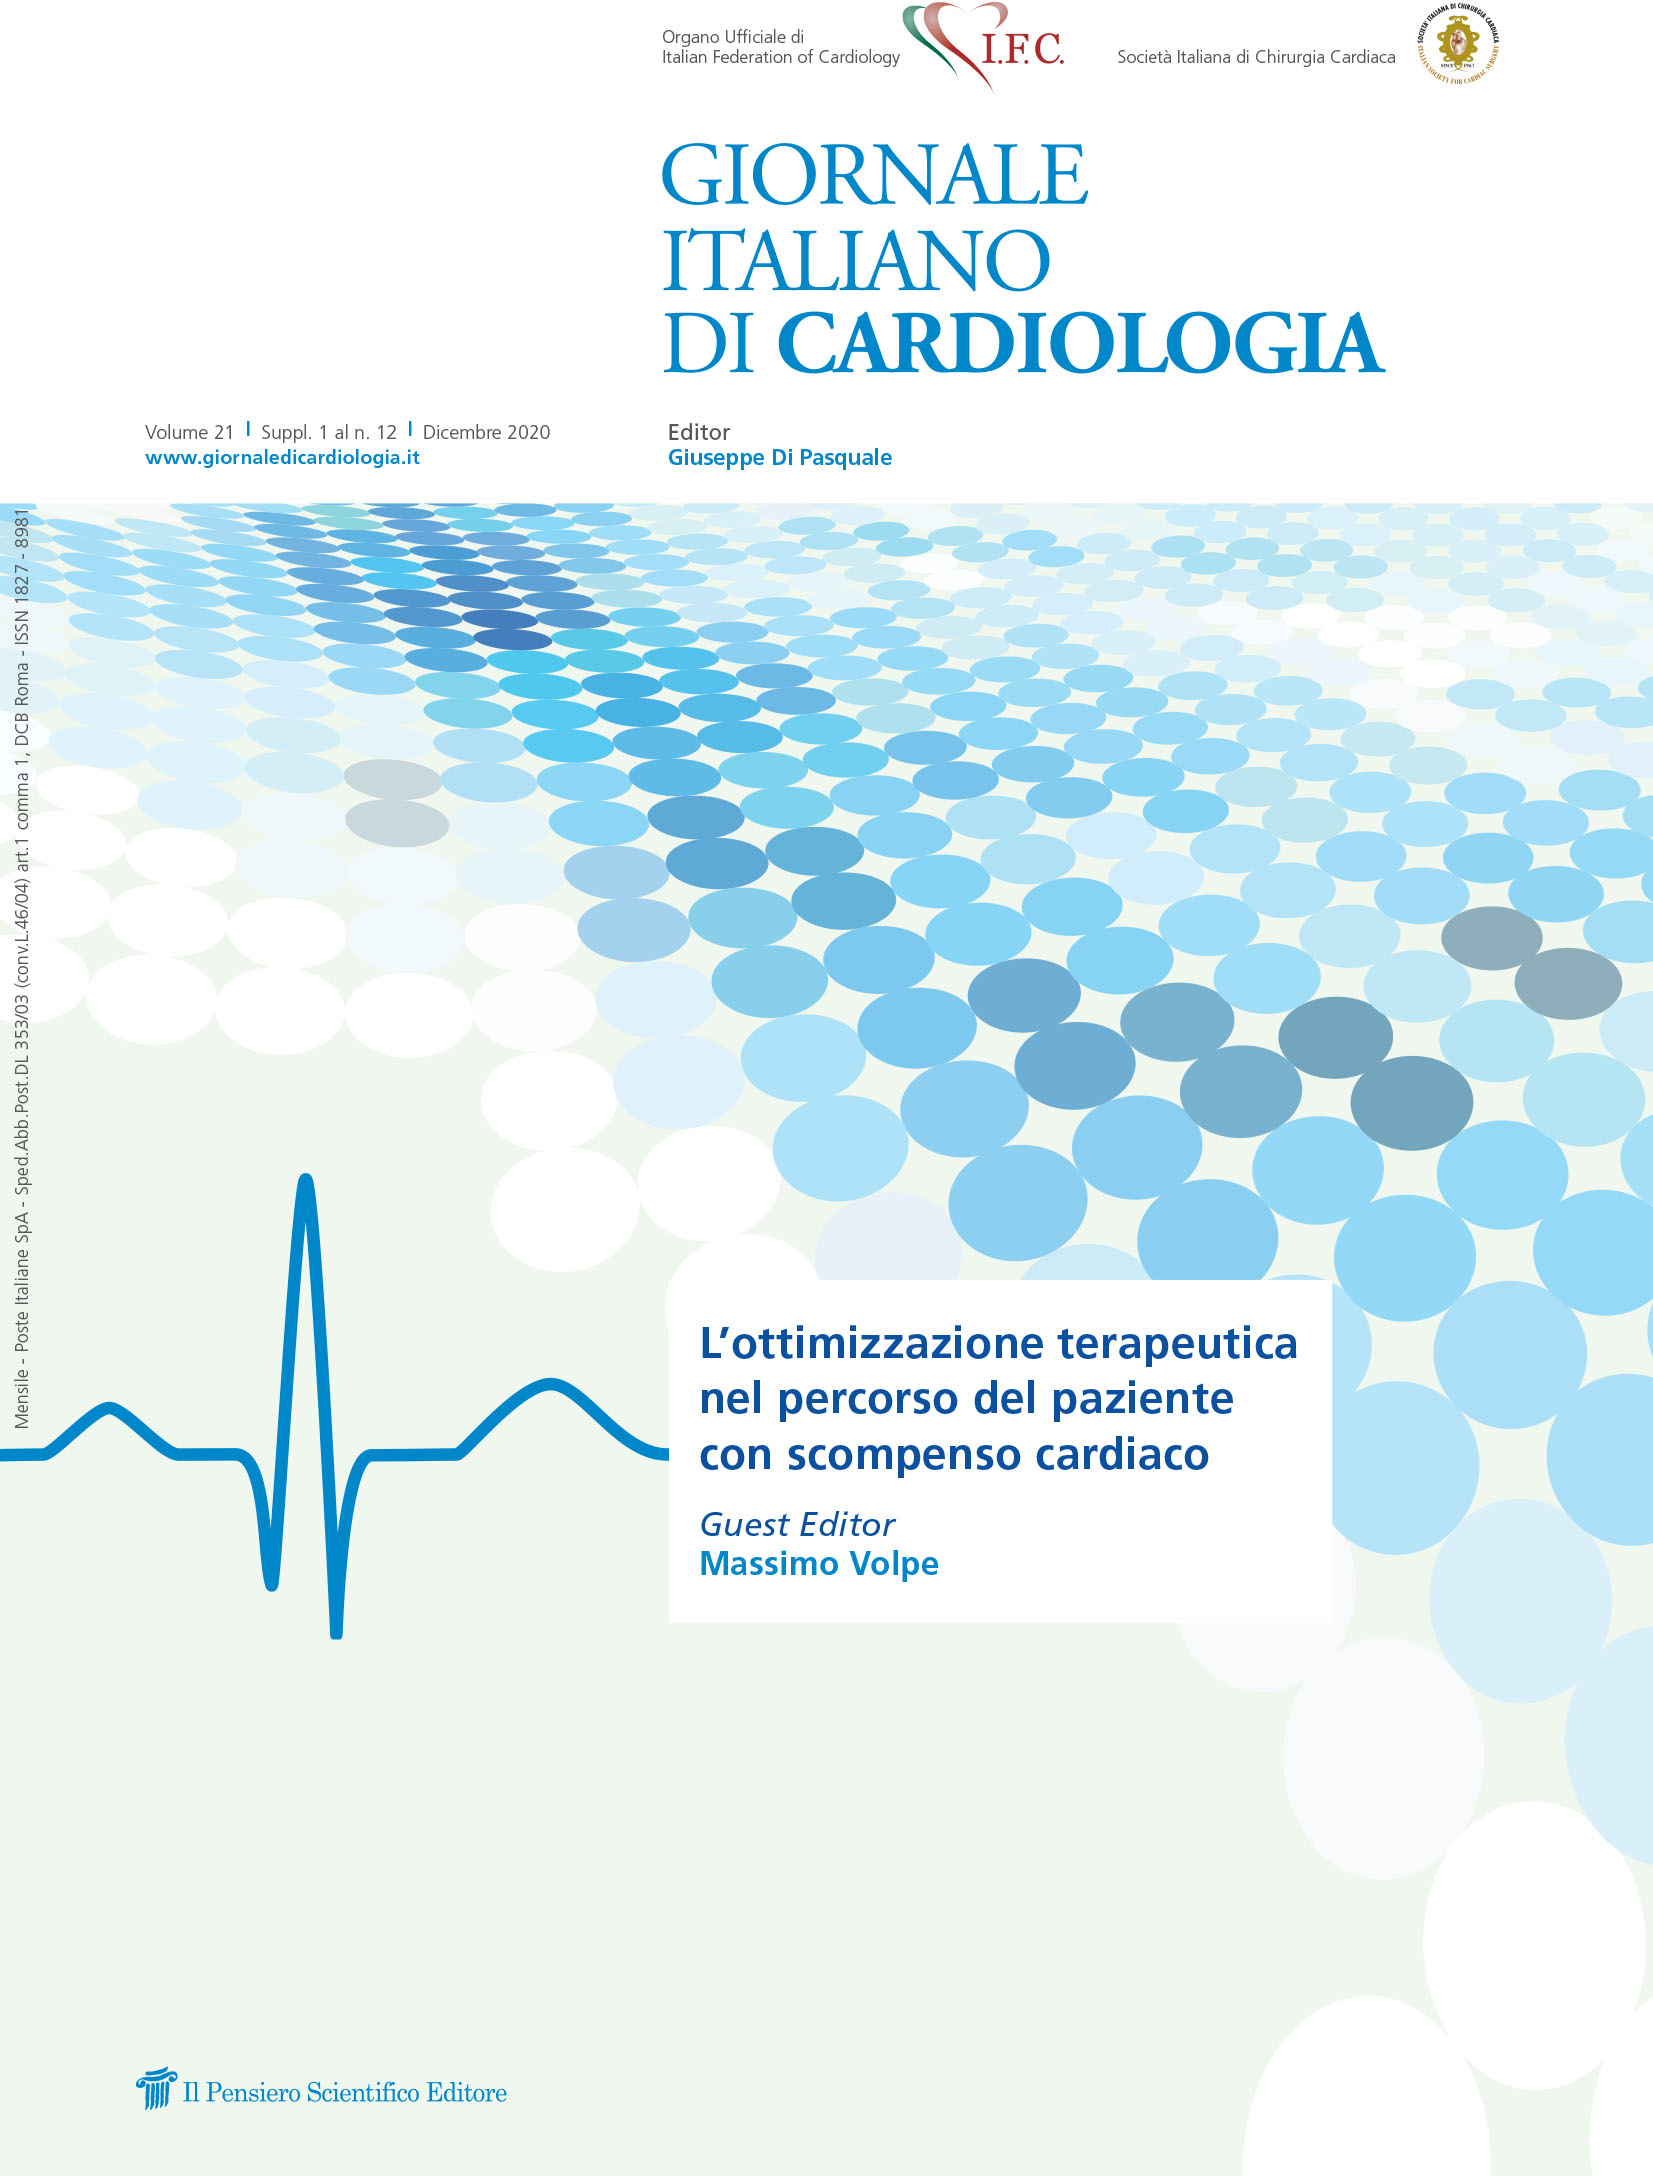 2020 Vol. 21 Suppl. 1 al N. 12 DicembreL'ottimizzazione terapeutica nel percorso del paziente con scompenso cardiaco